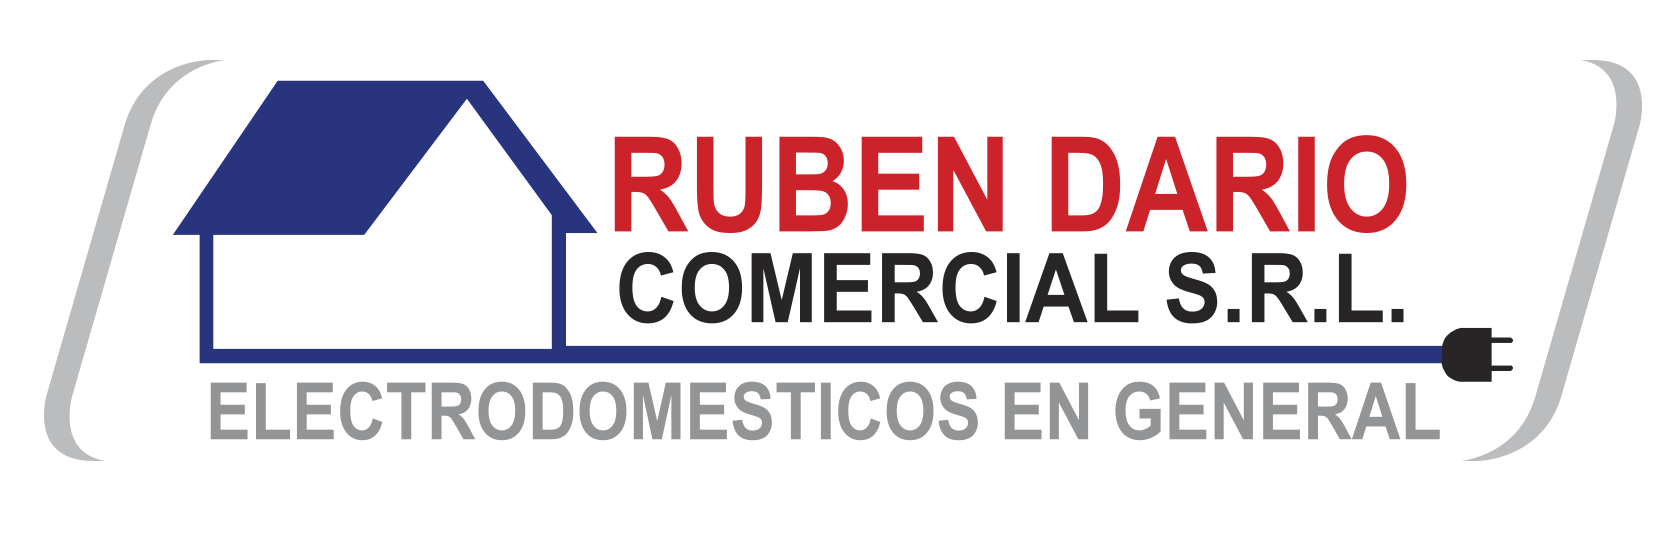 Catálogo — Rubén Dario Comercial S.R.L